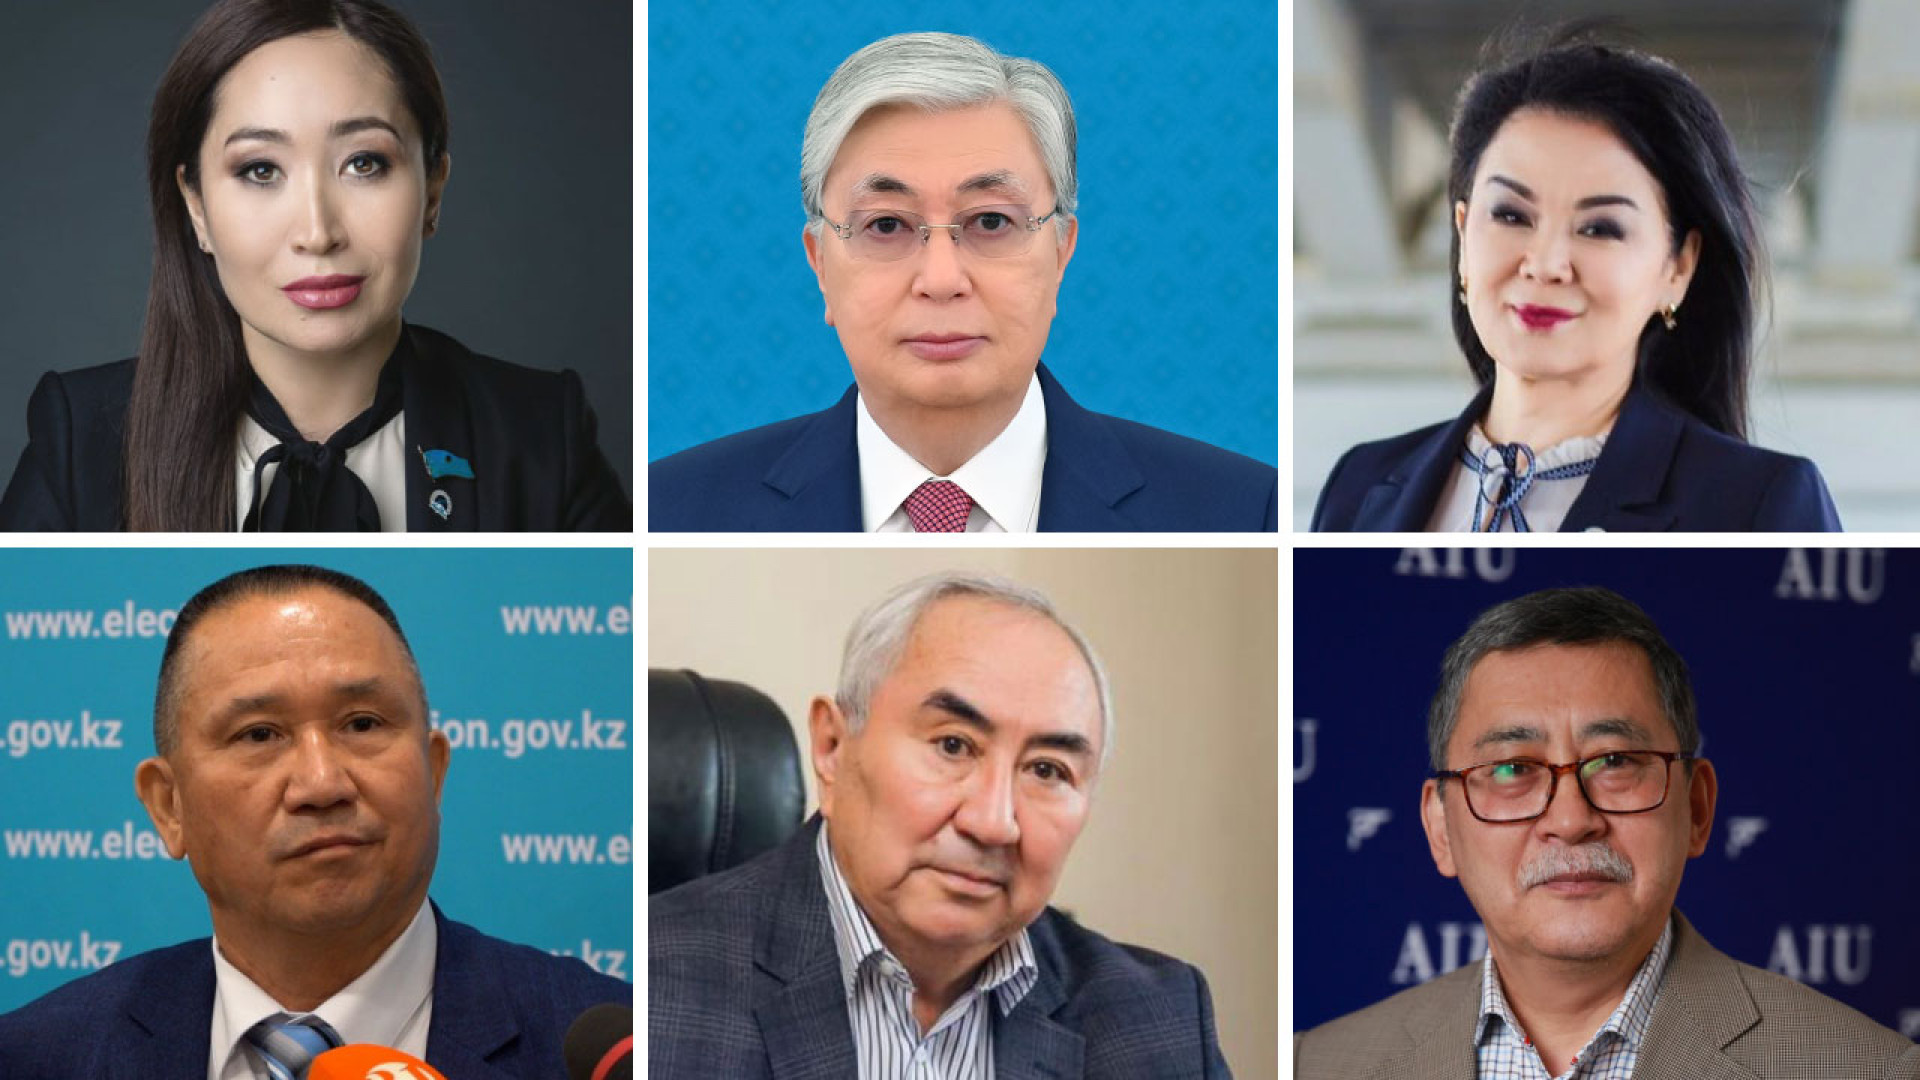 Что предлагают изменить кандидаты в президенты Казахстана: 15 ноября 2022,  08:29 - новости на Tengrinews.kz